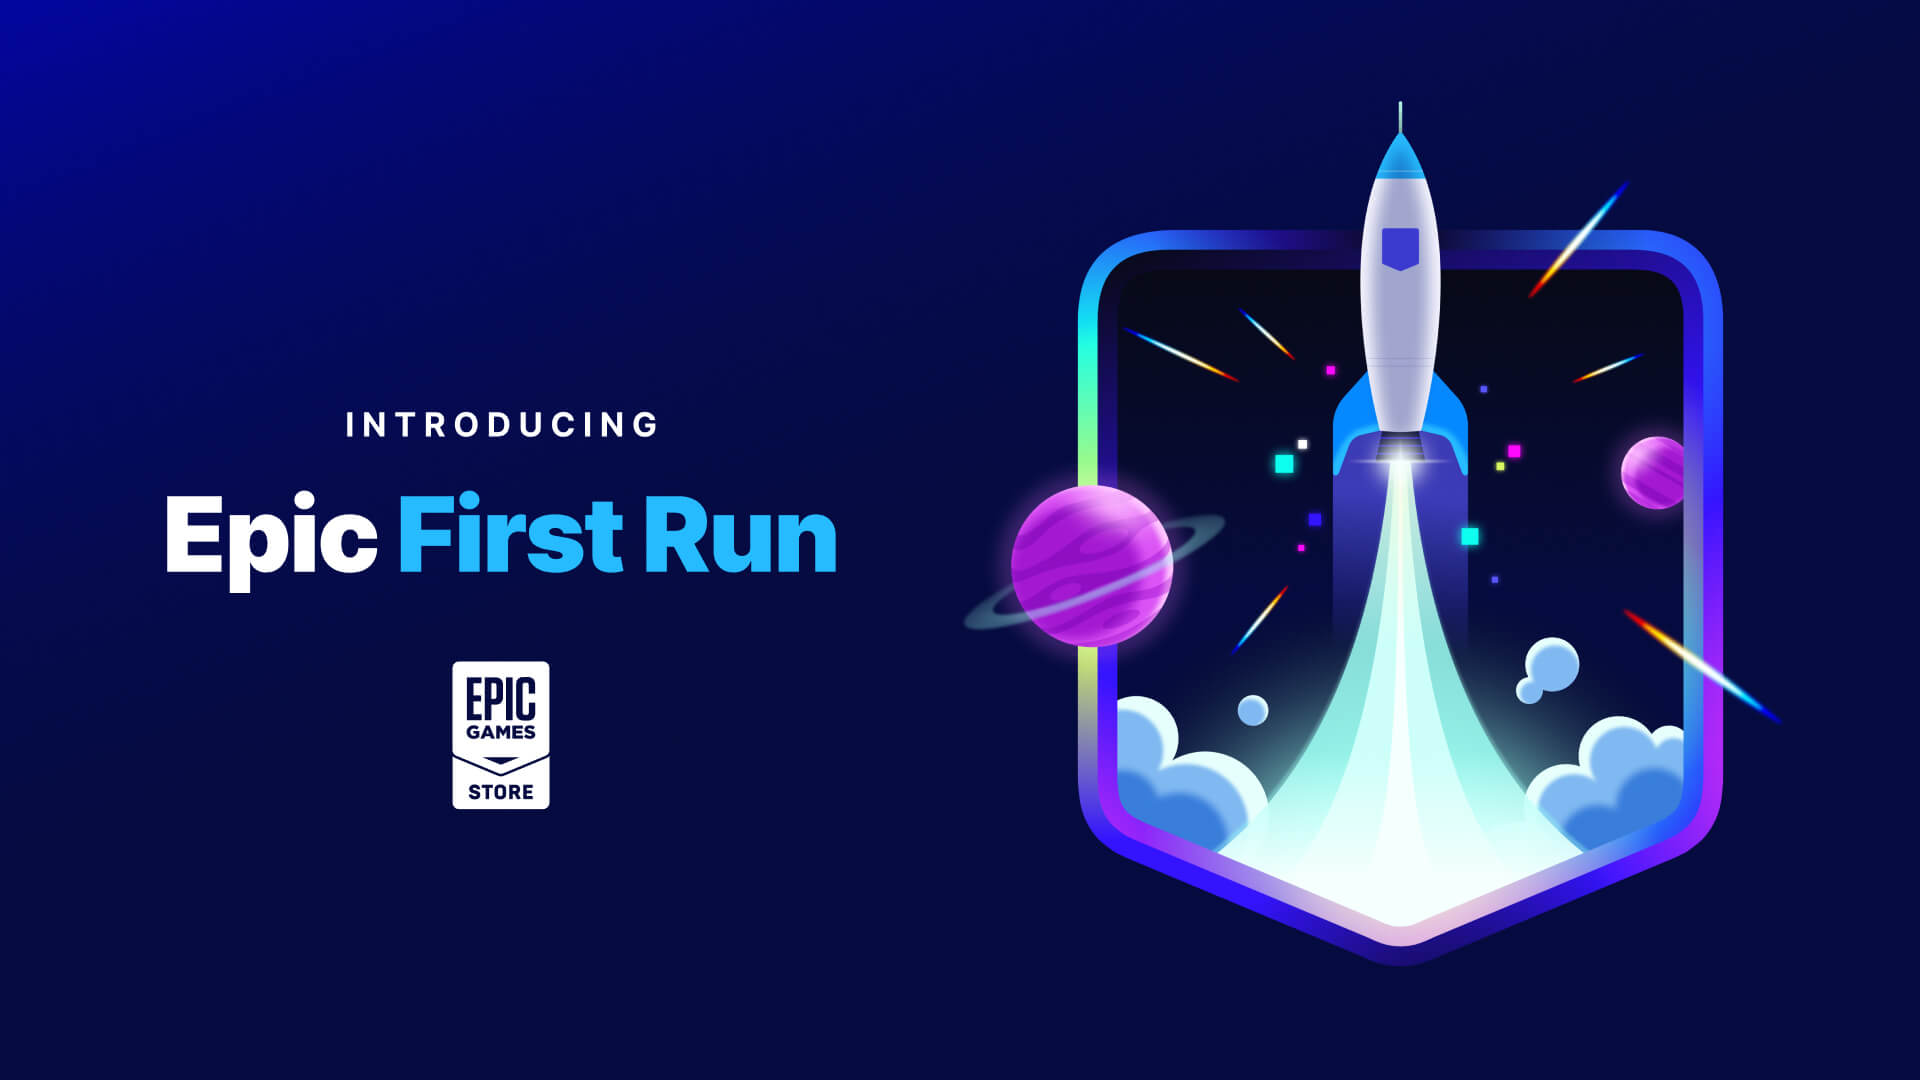 В программе Epic First Run разработчики получат 100% чистого дохода в течение 6 месяцев эксклюзивности в EGS